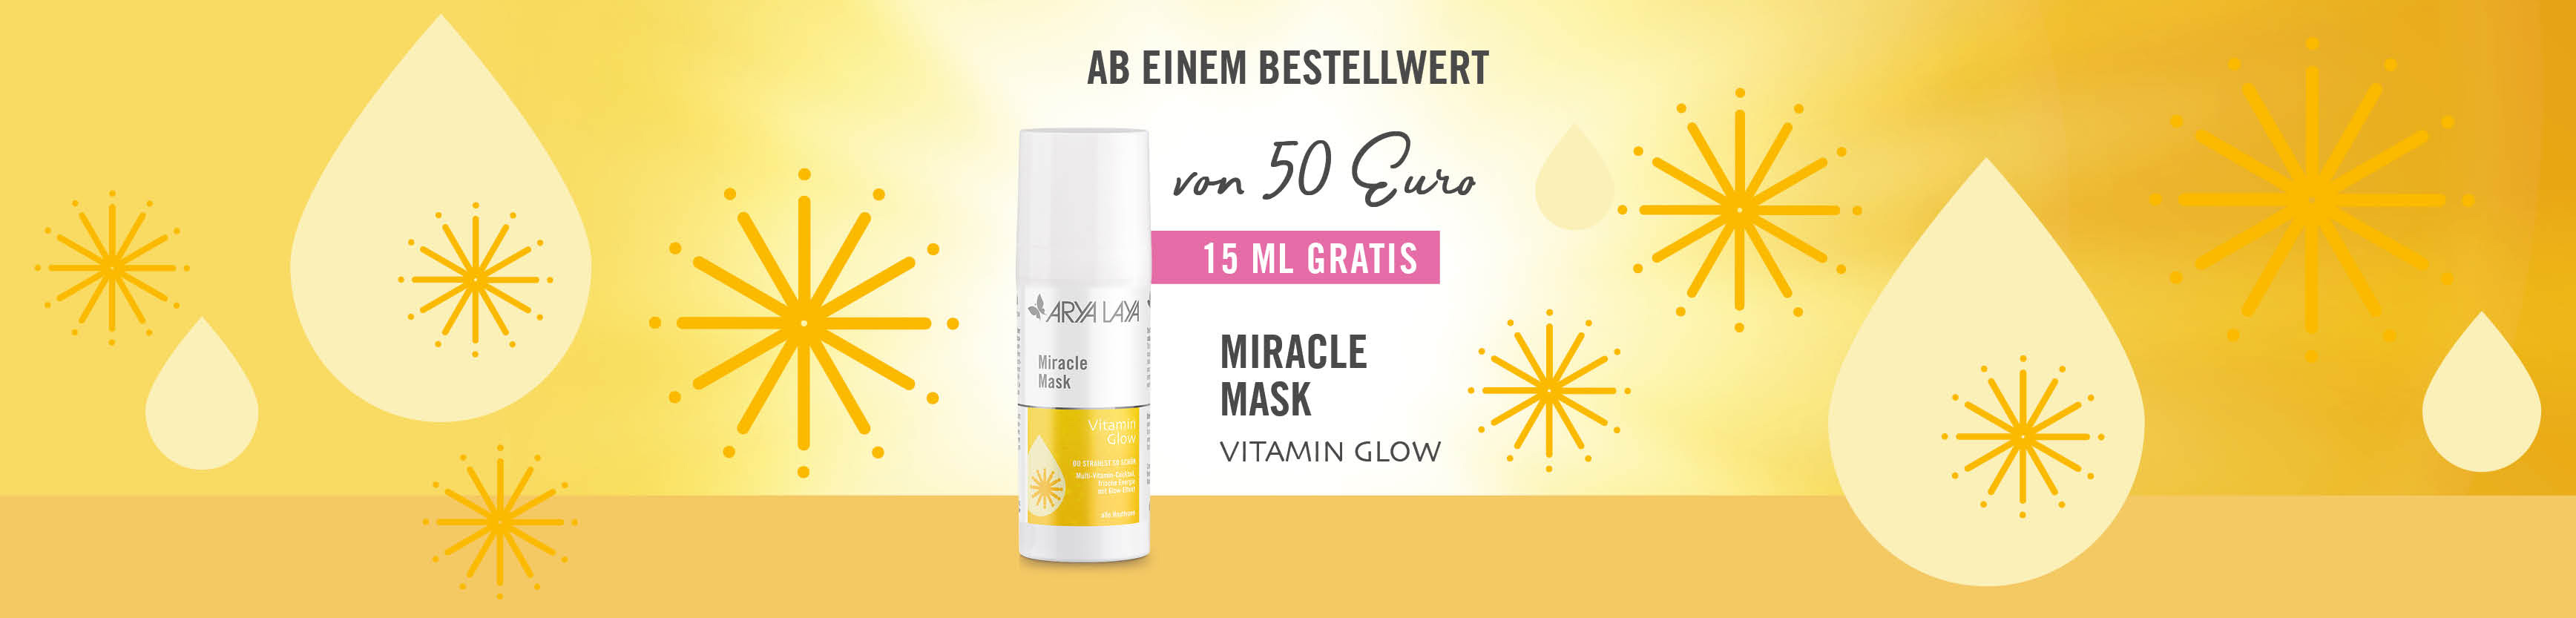 Ab 50 Euro Bestellwert gibt es eine Miracle Mask Vitamin Glow in 15 ml gratis dazu